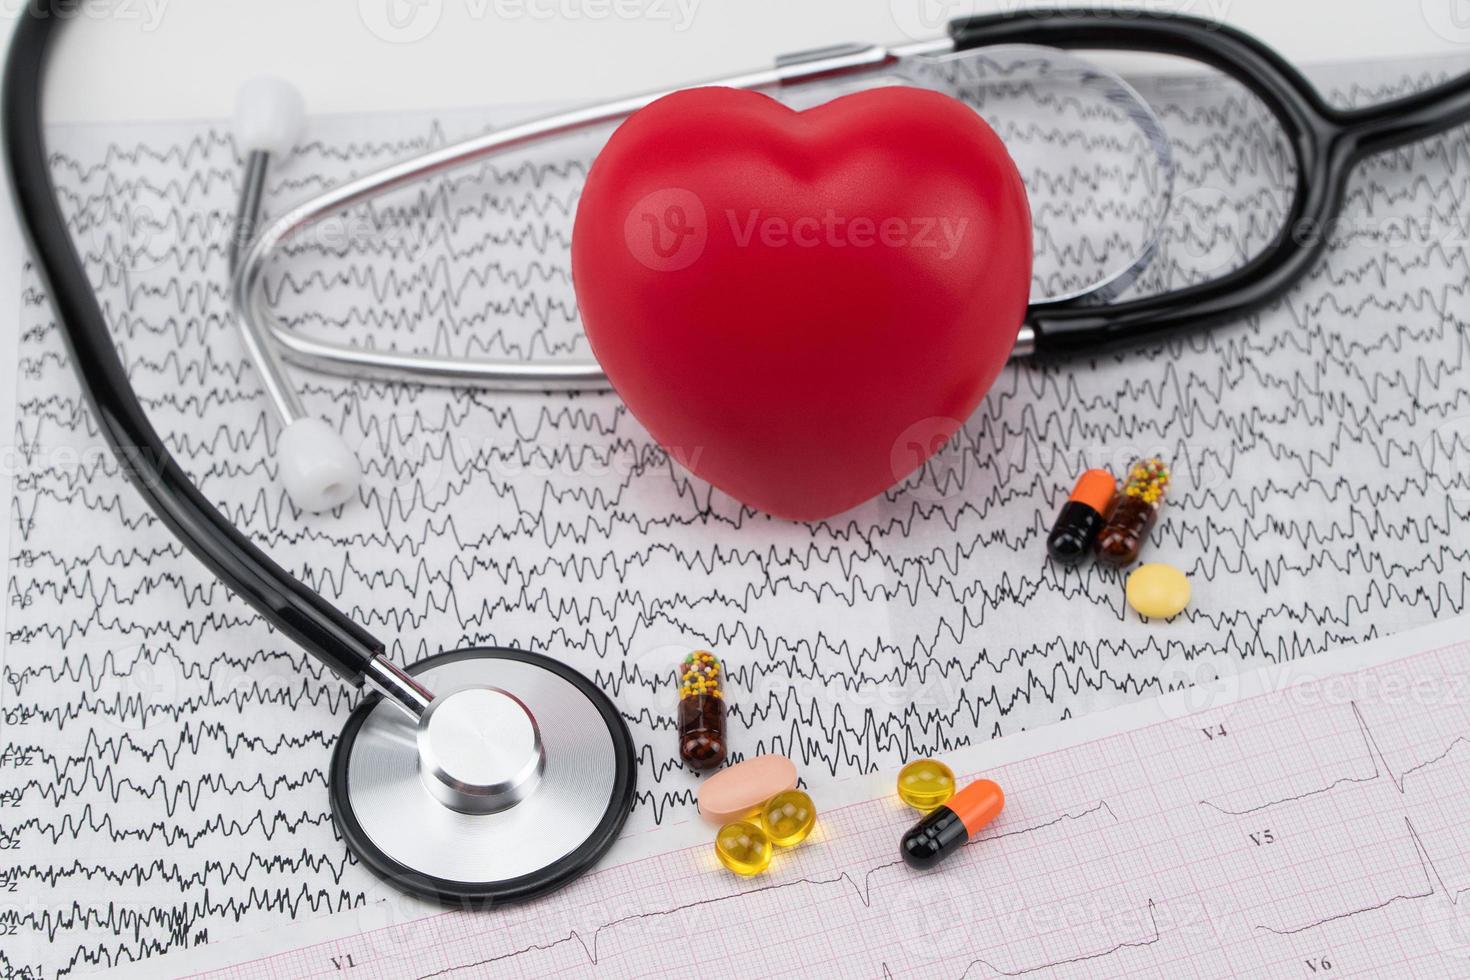 stetoskop på elektrokardiogram och leksakshjärta. koncept sjukvård. kardiologi - vård av hjärtat foto